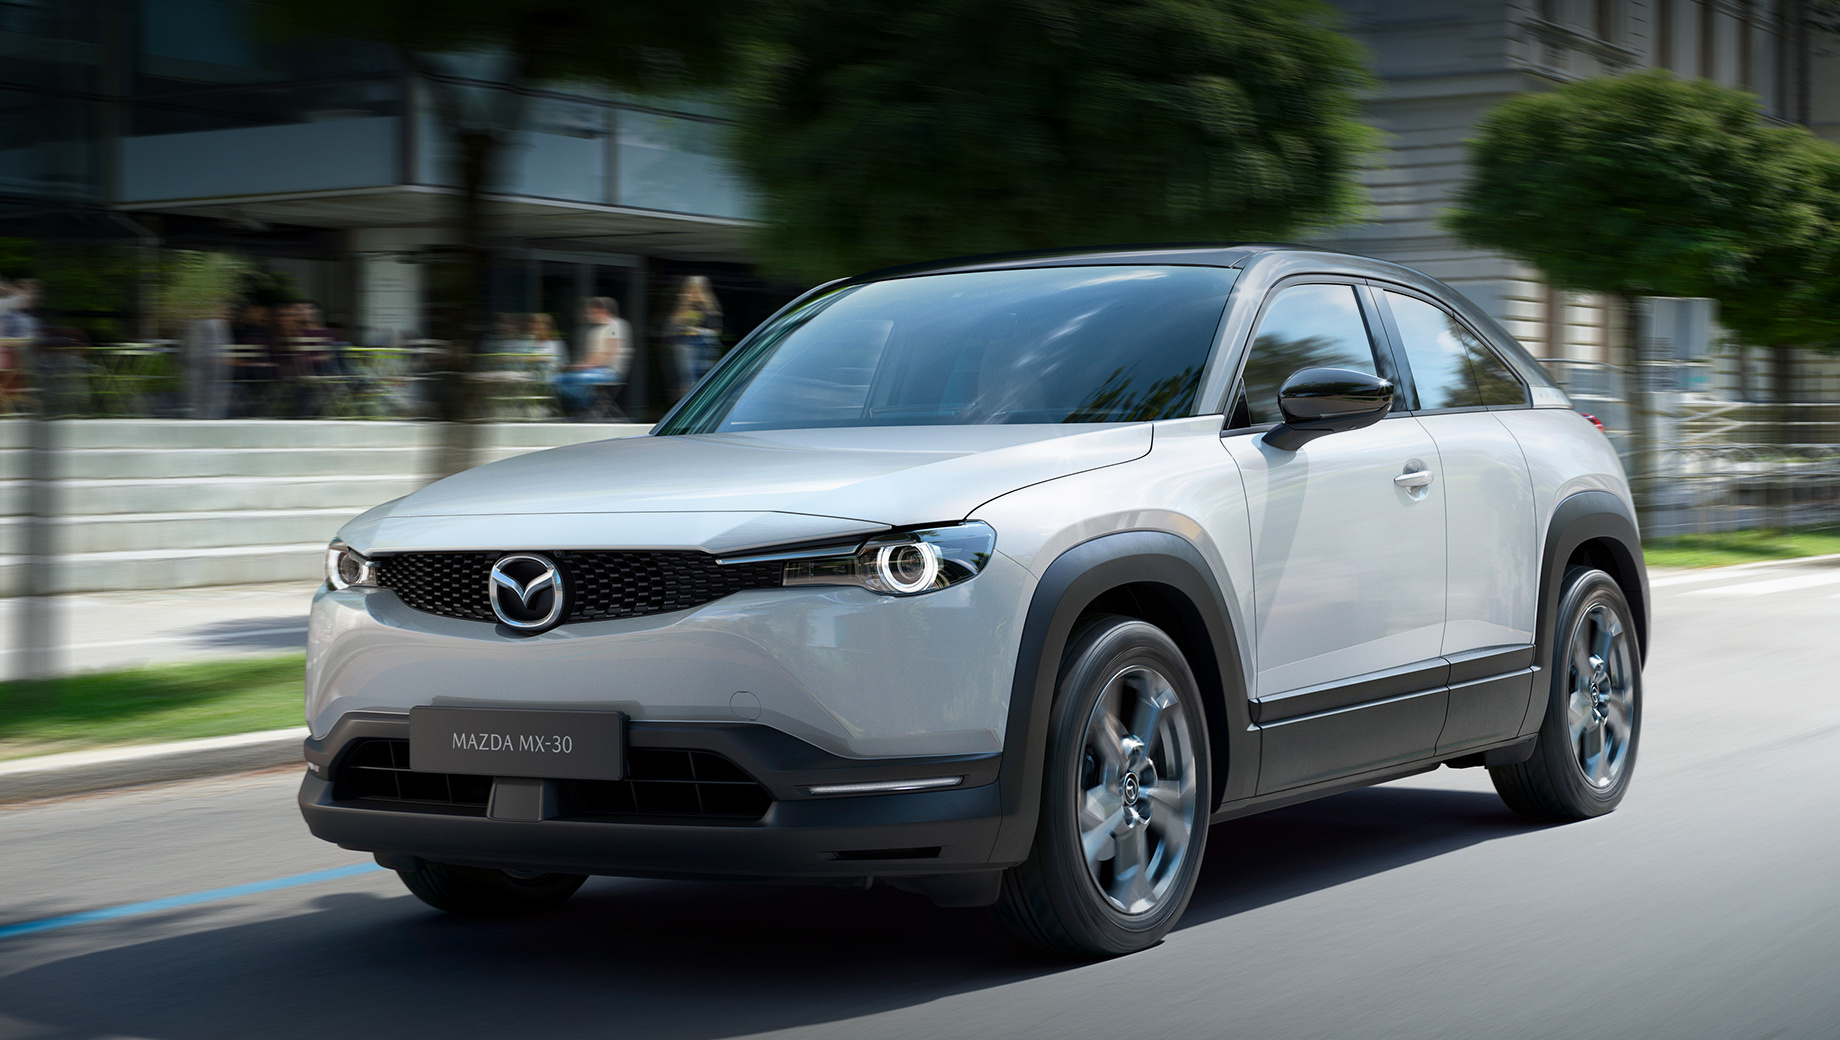 Pierwszy samochód elektryczny marki Mazda MX-30 będzie miał wersję benzynową i hybrydową